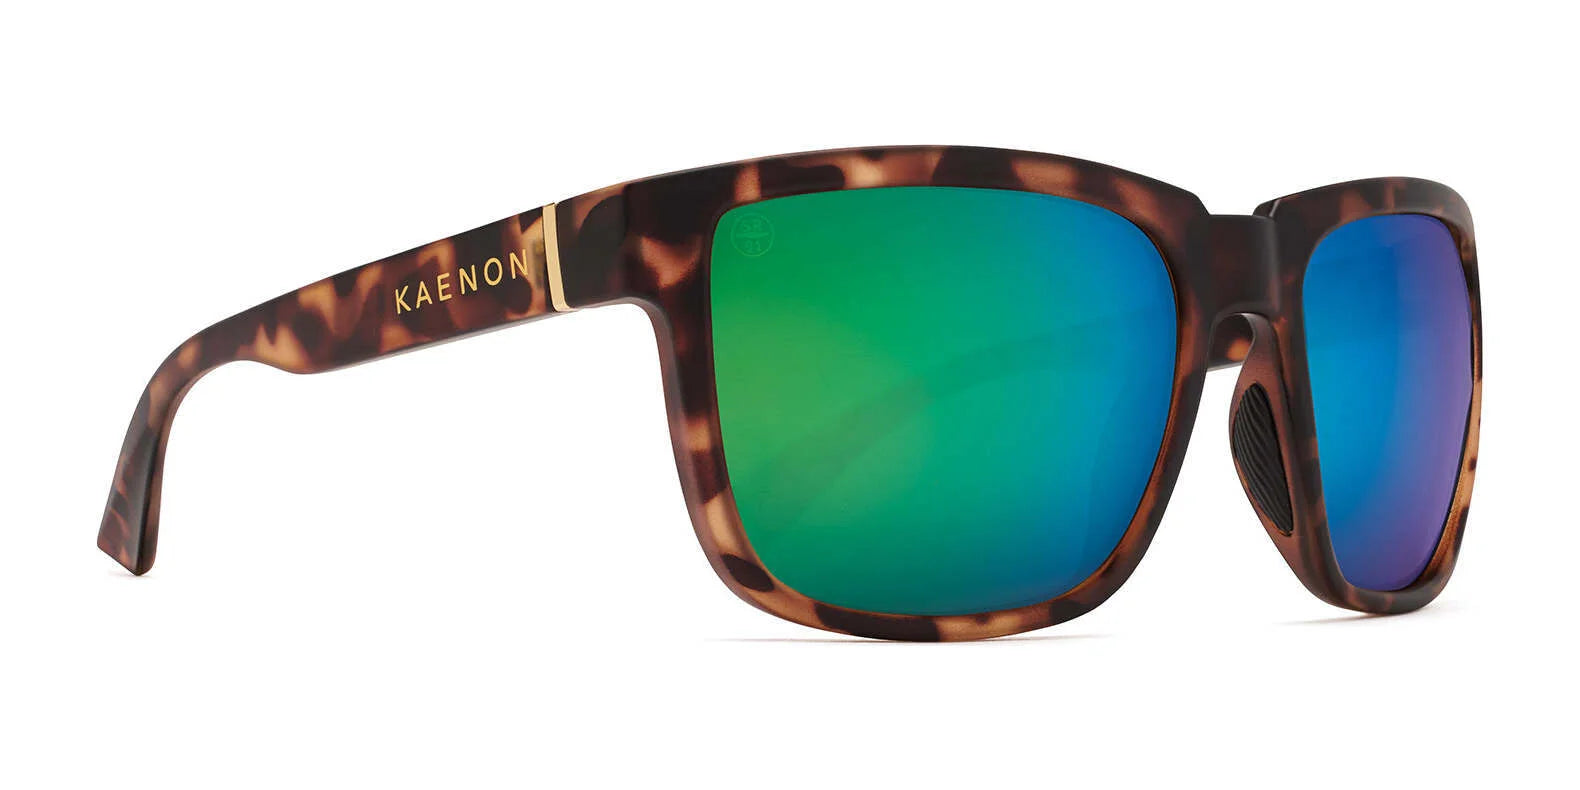 Kaenon SALTON Sunglasses 150 / Matte Tortoise